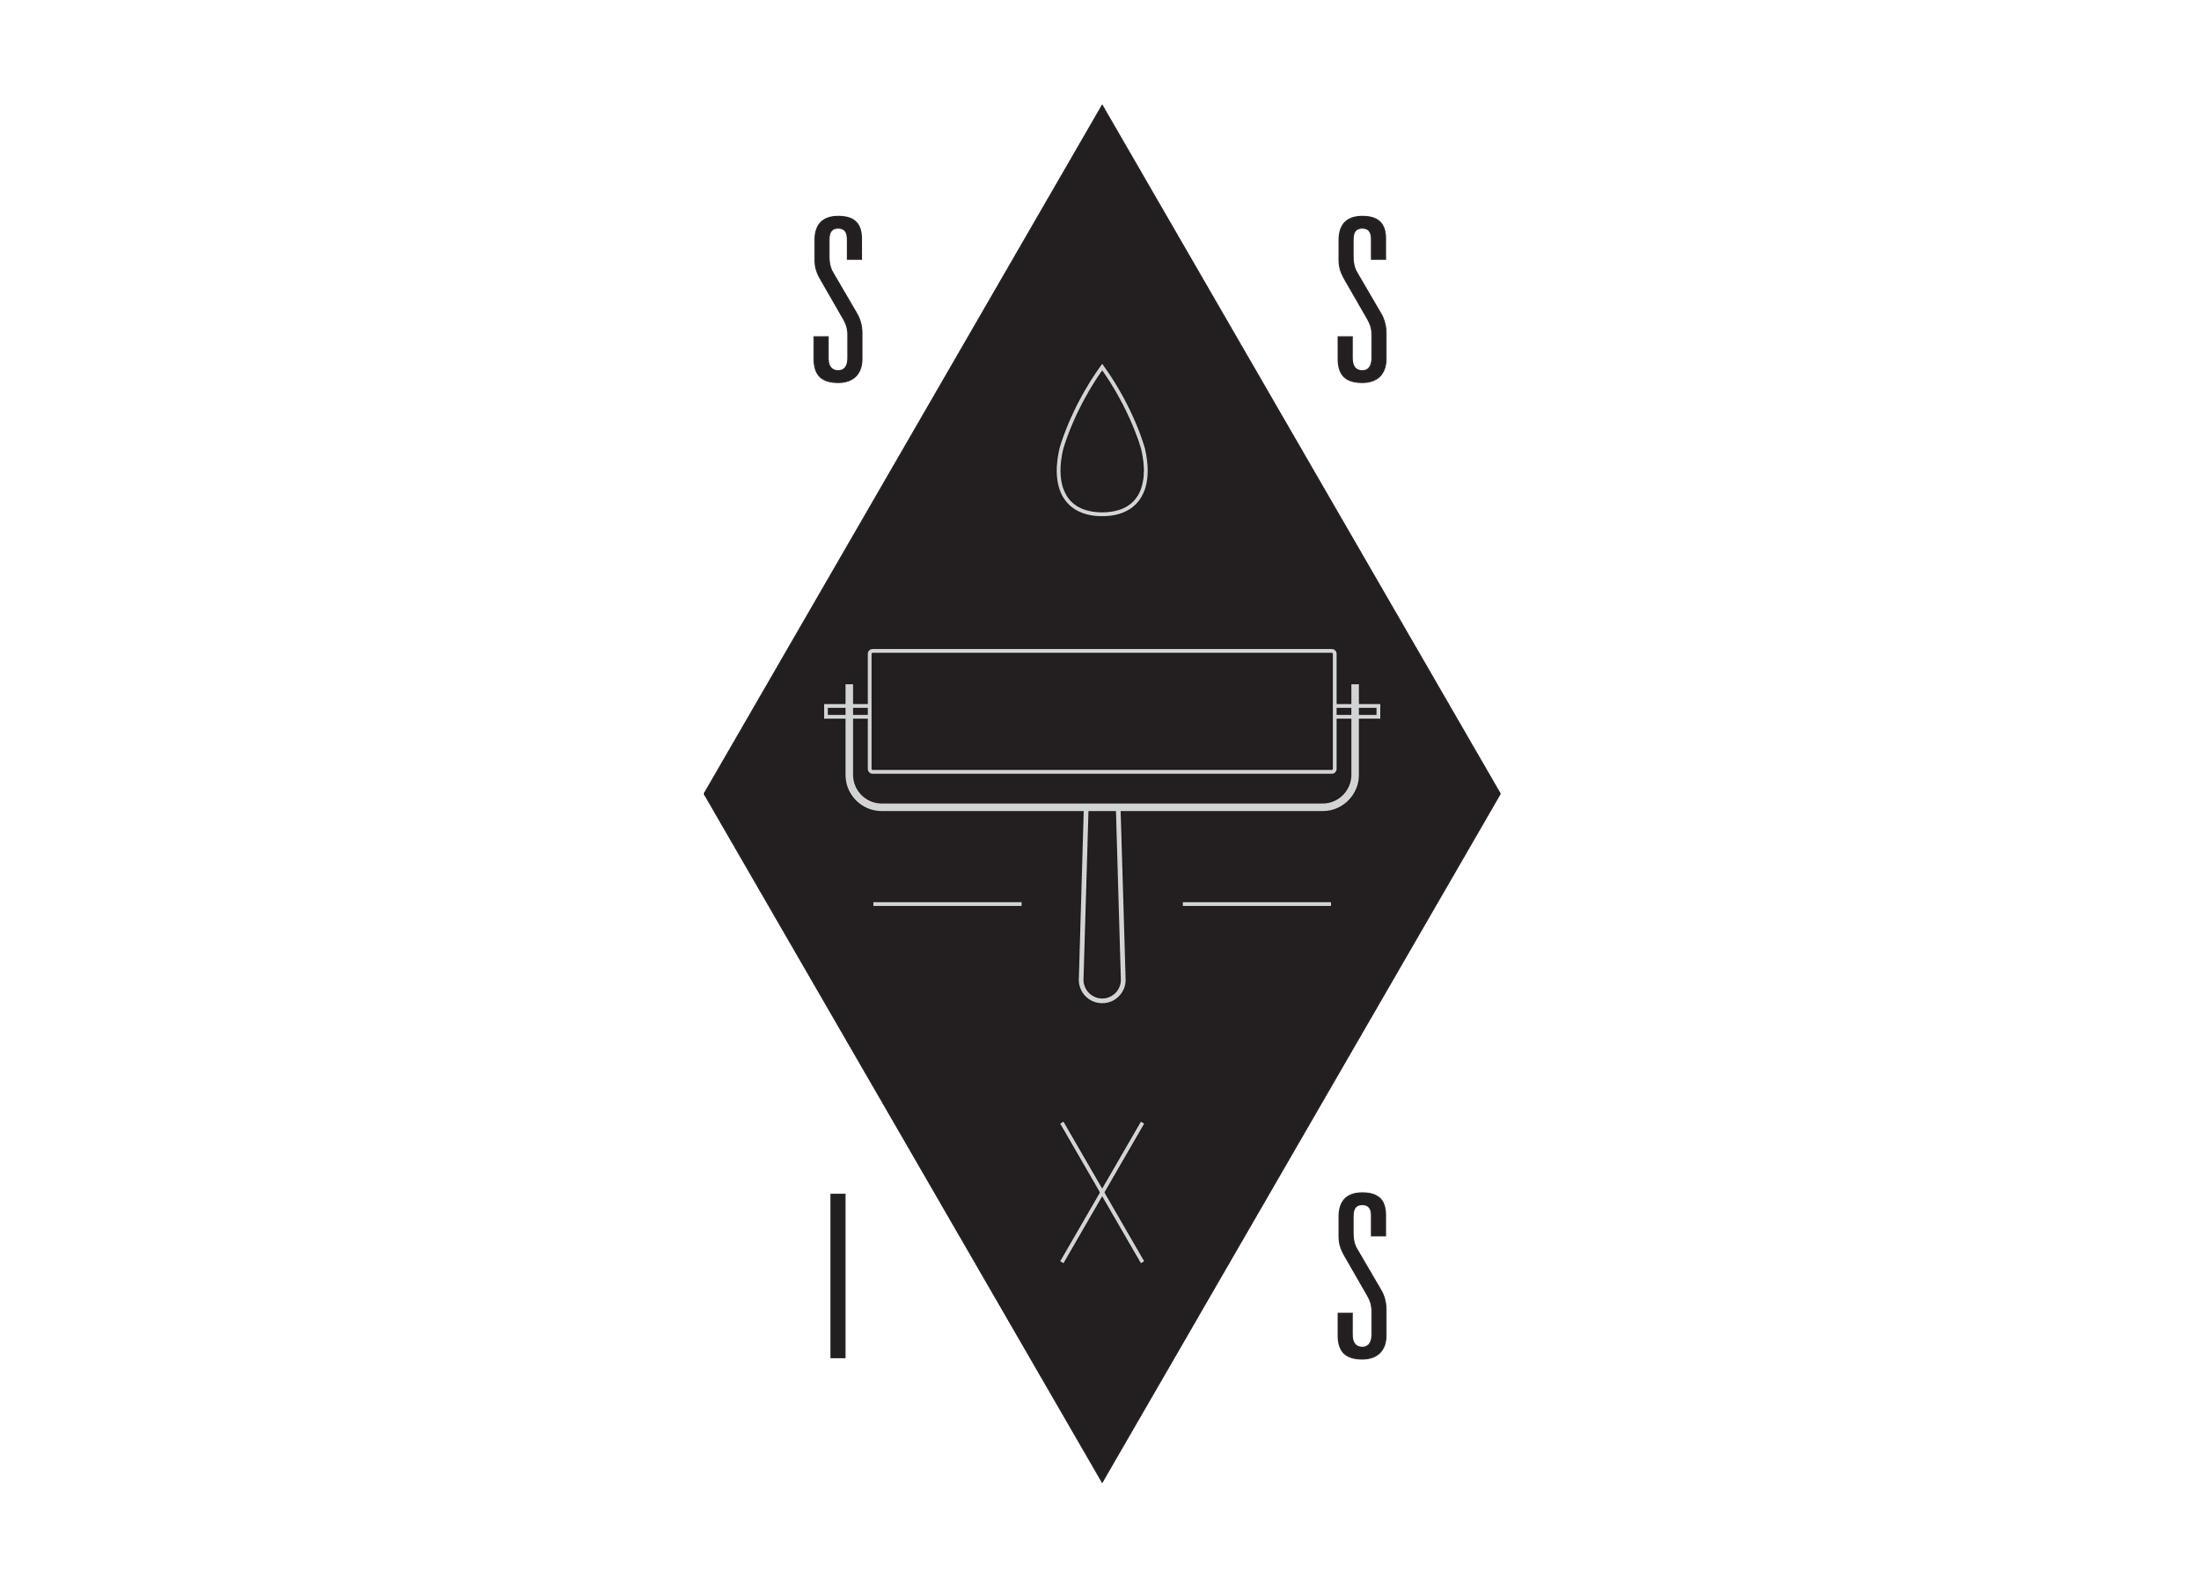 The Secret Society of Ink Slingers logo.